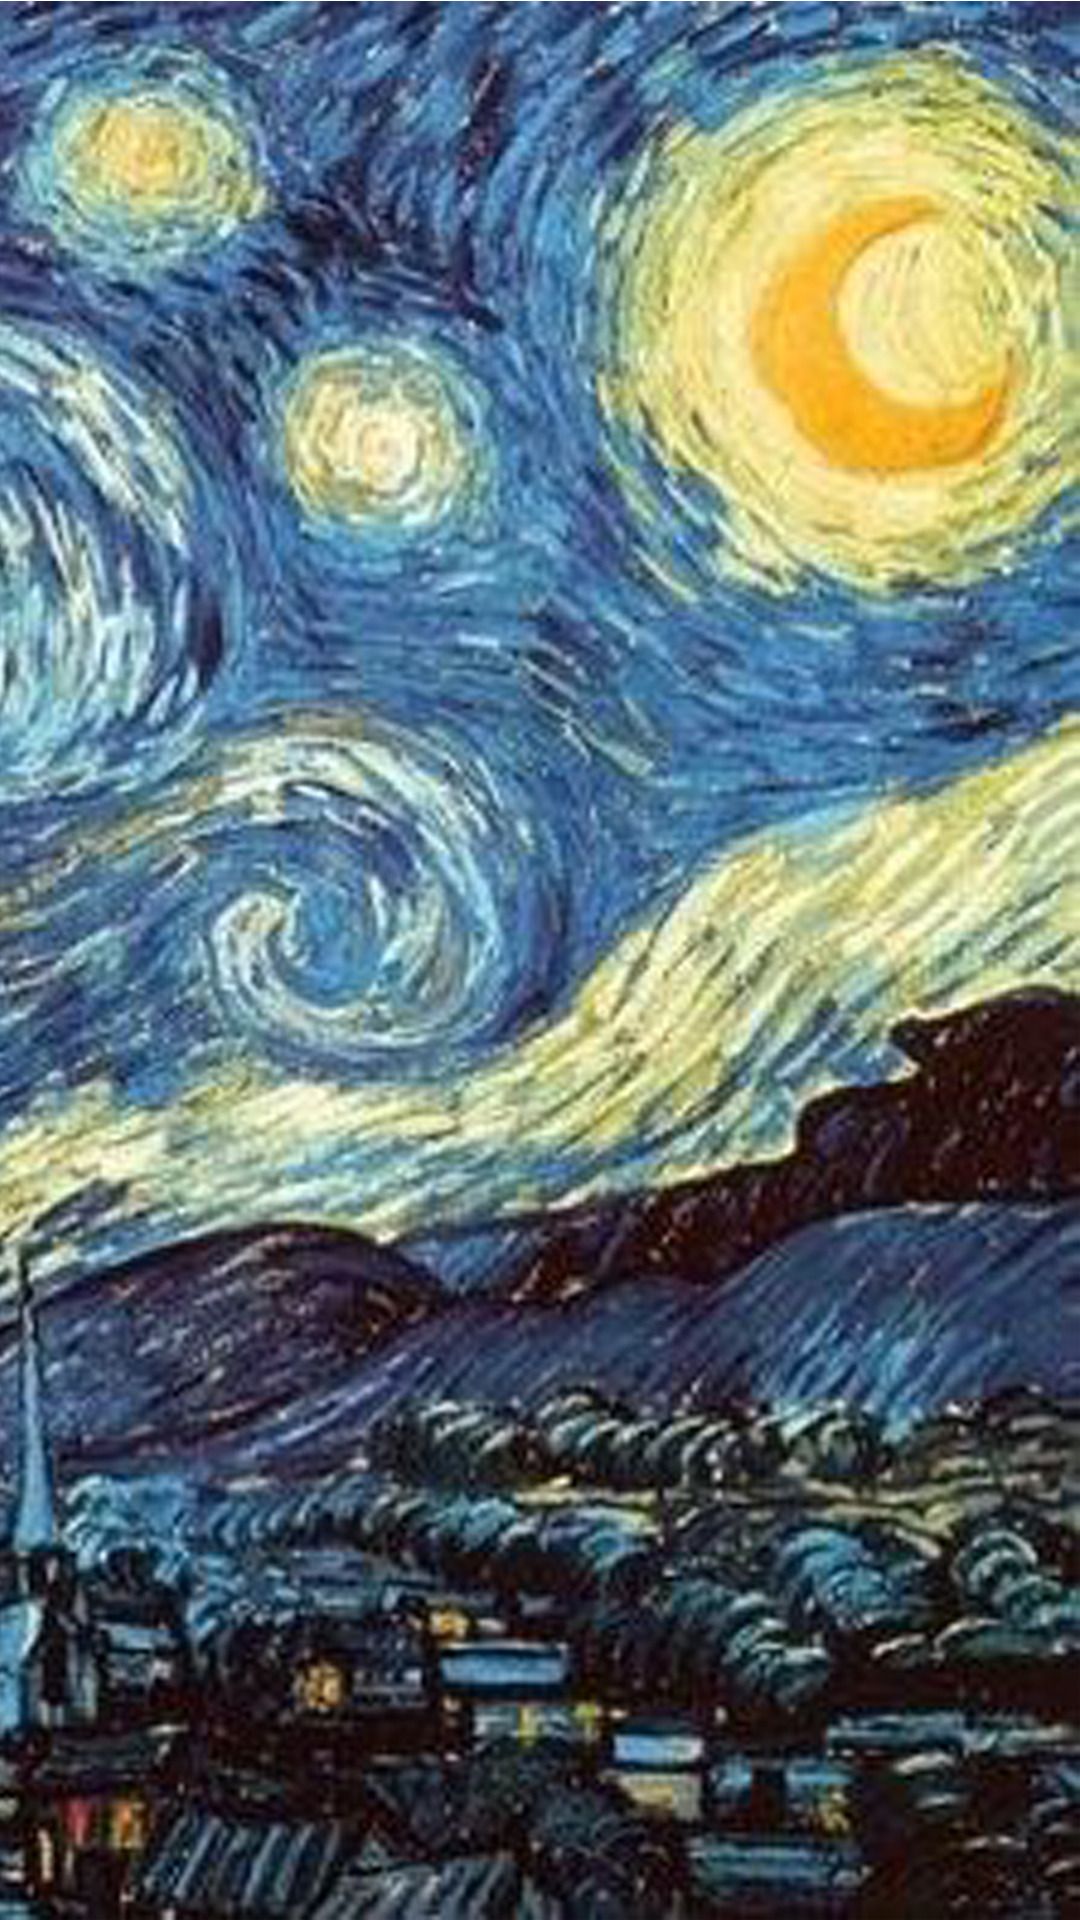 Vincent van Gogh's painting 